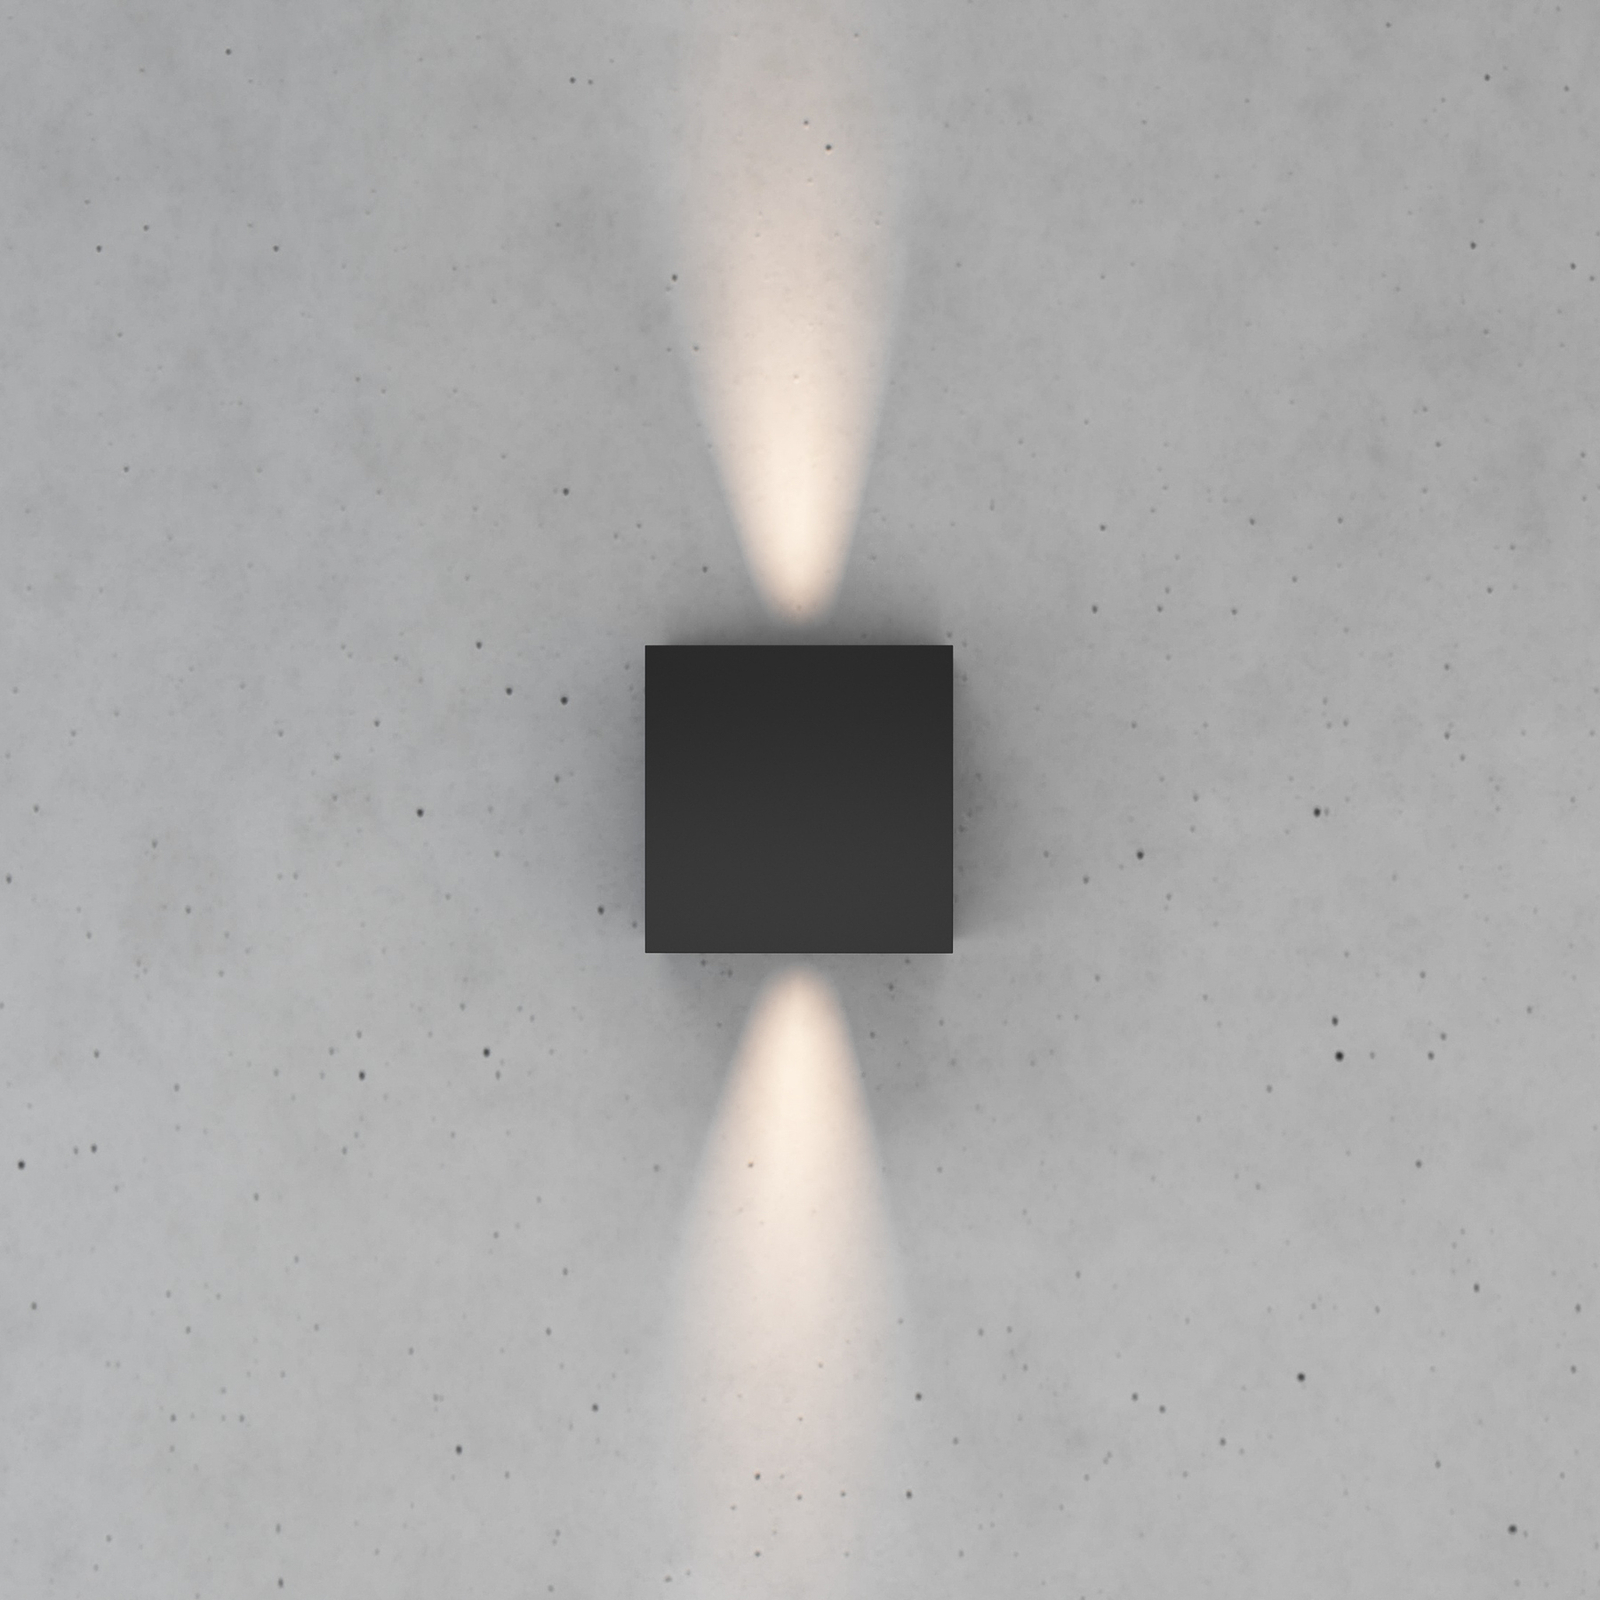 Zuza 2 sienas lampa, melna, metāla, četri spārni, 10 cm, G9